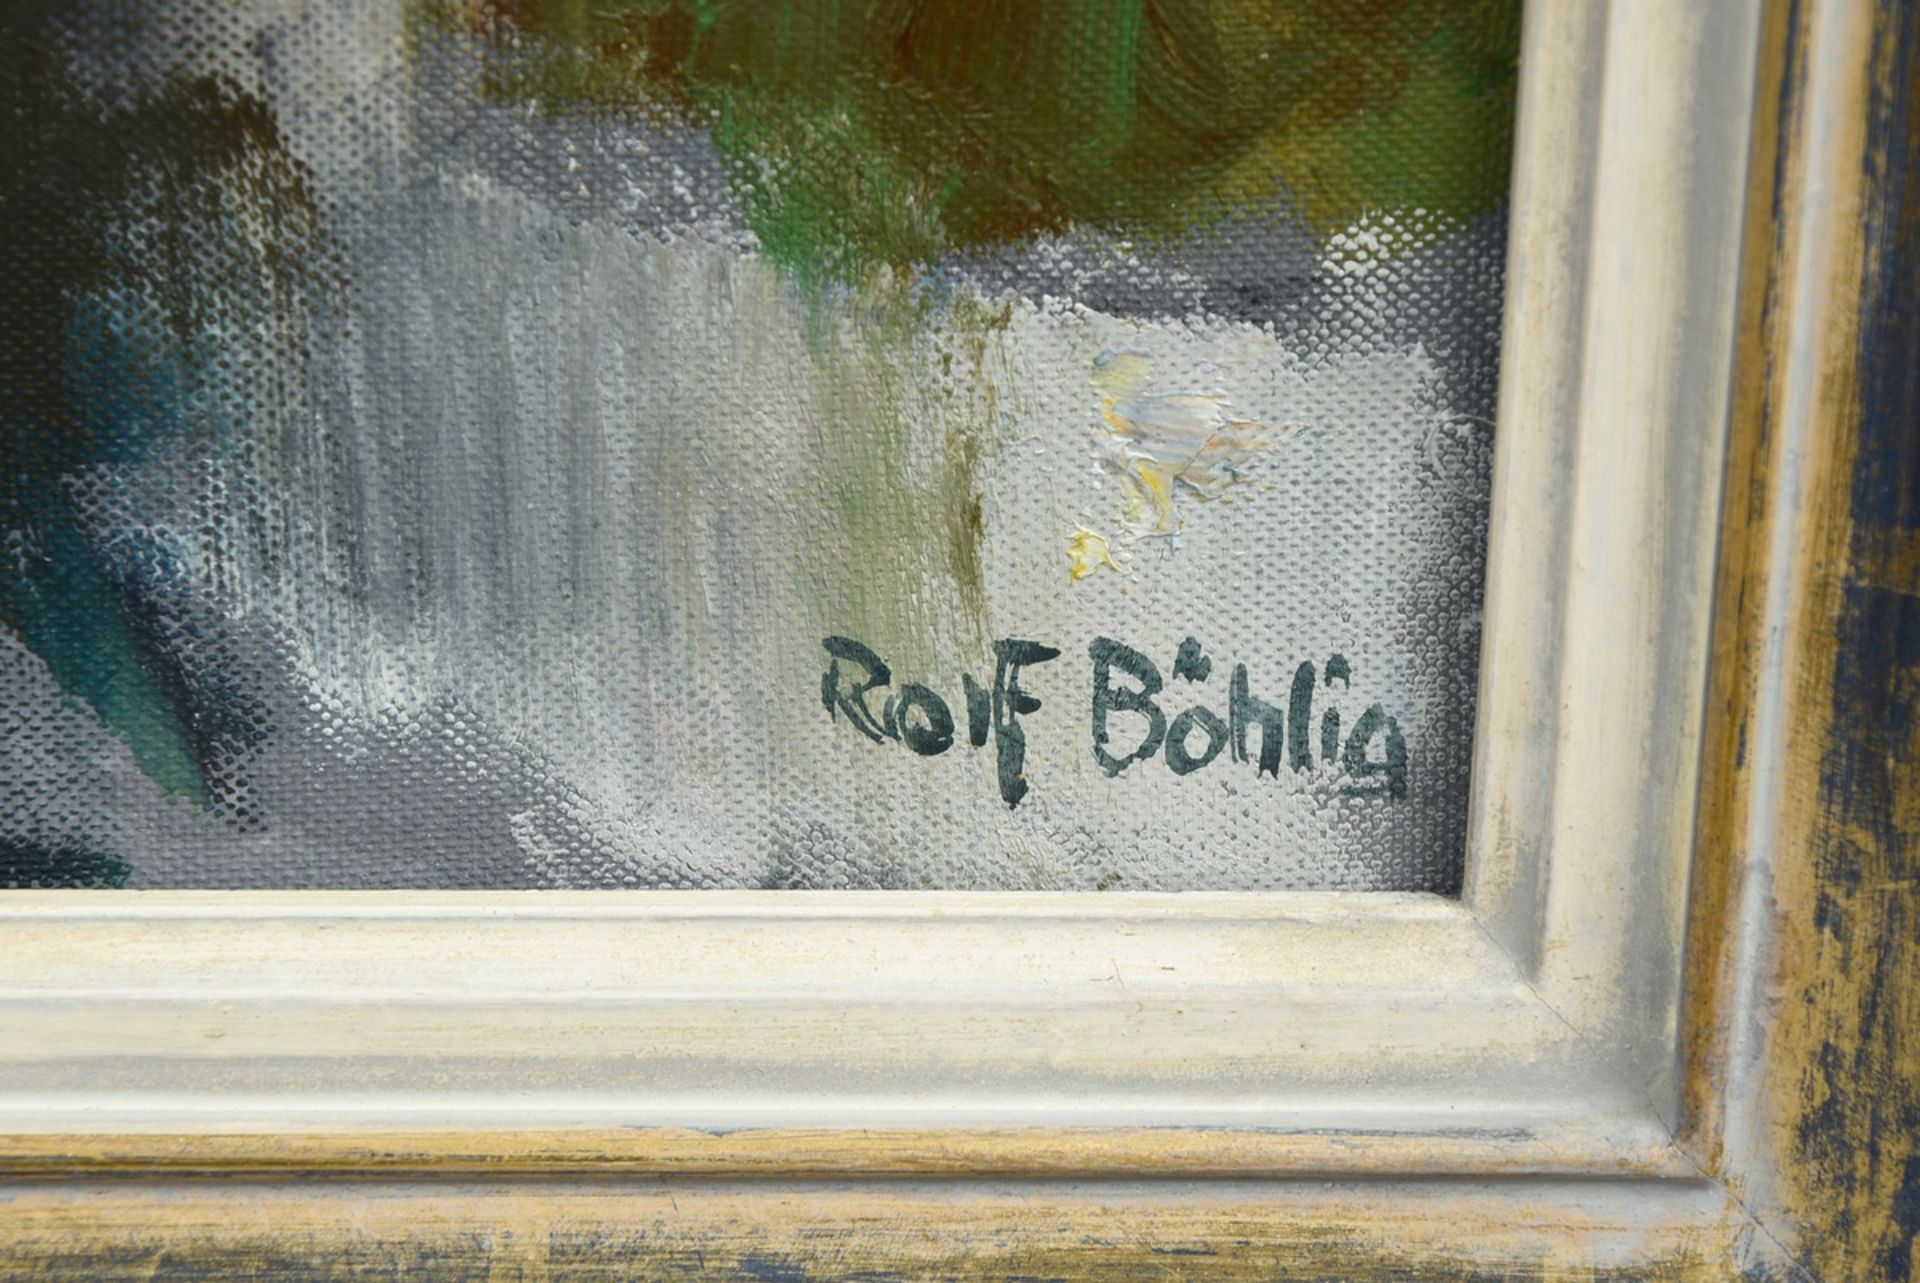 Böhlig, Rolf (1904-1979) "Hoisbüttel" (houses at the Bredenbek) 1977, oil/canvas on cardboard, sign - Image 3 of 5